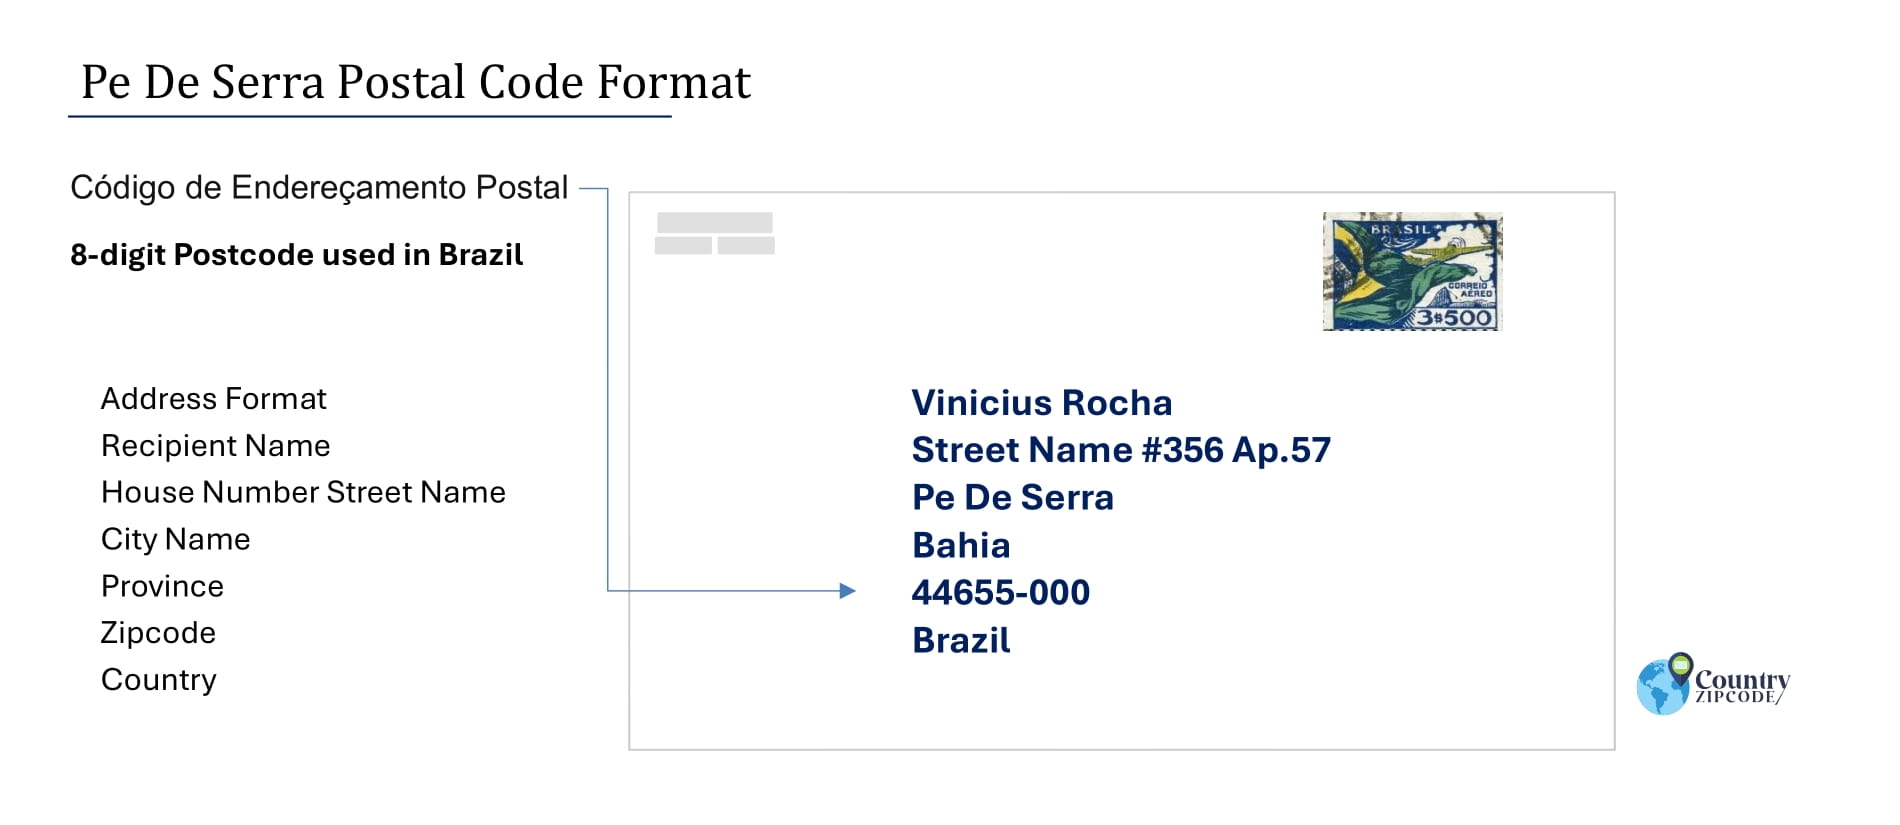 Example of Codigo de Enderecamento Postal and Address format of Pe De Serra Brazil